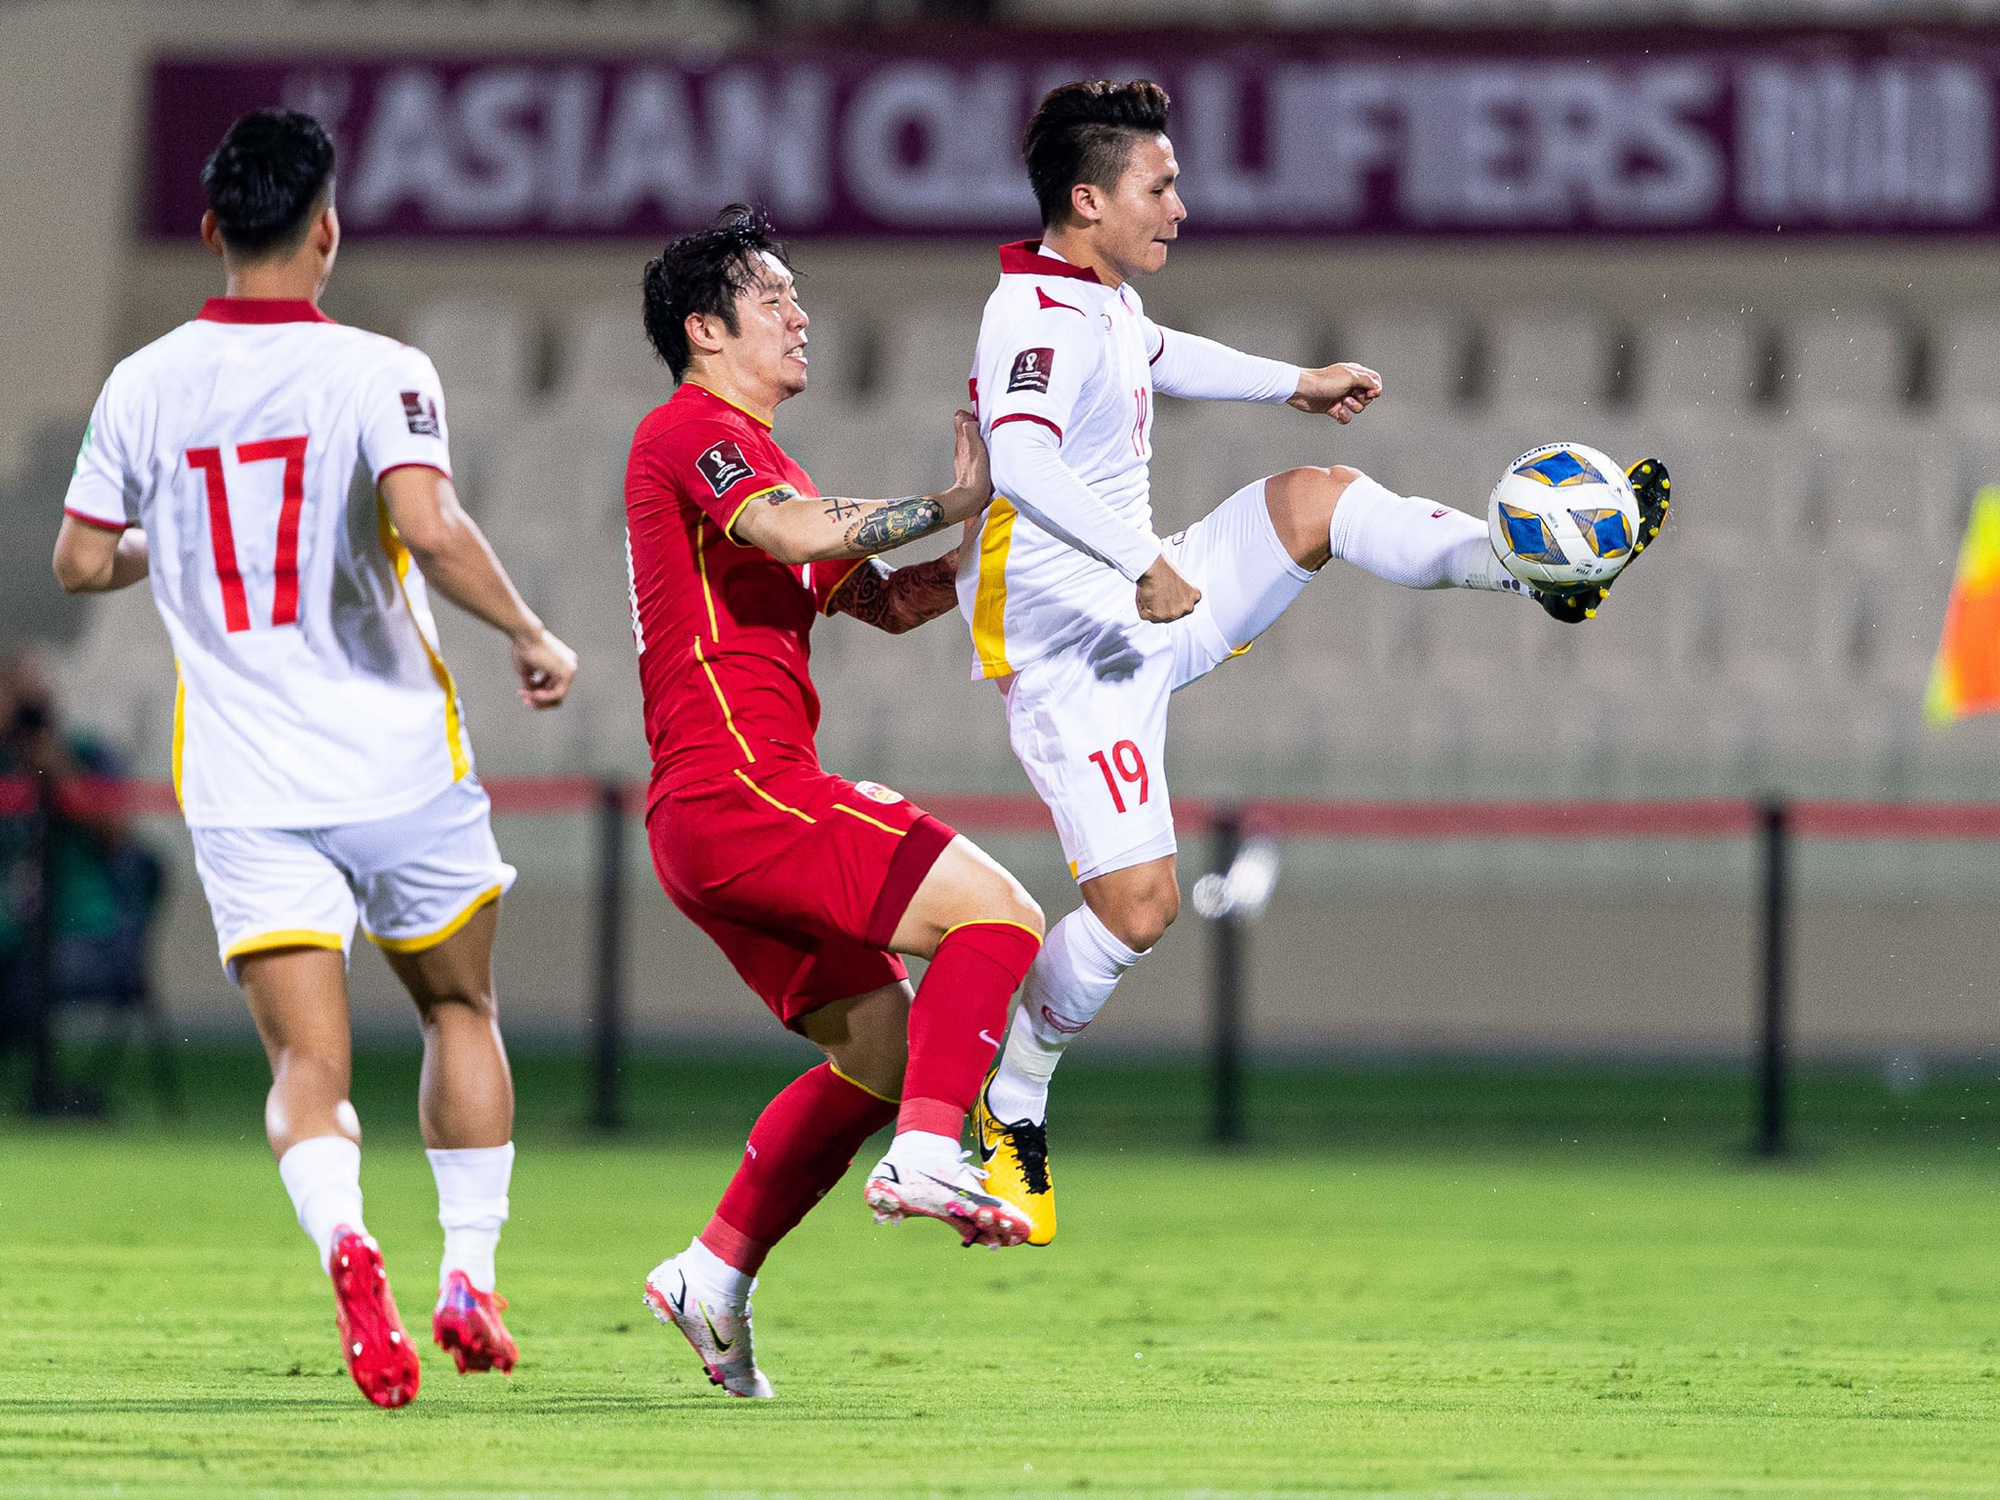 ĐT Oman vs ĐT Việt Nam, đội nào được coi là &quot;cửa trên&quot;? - Ảnh 2.